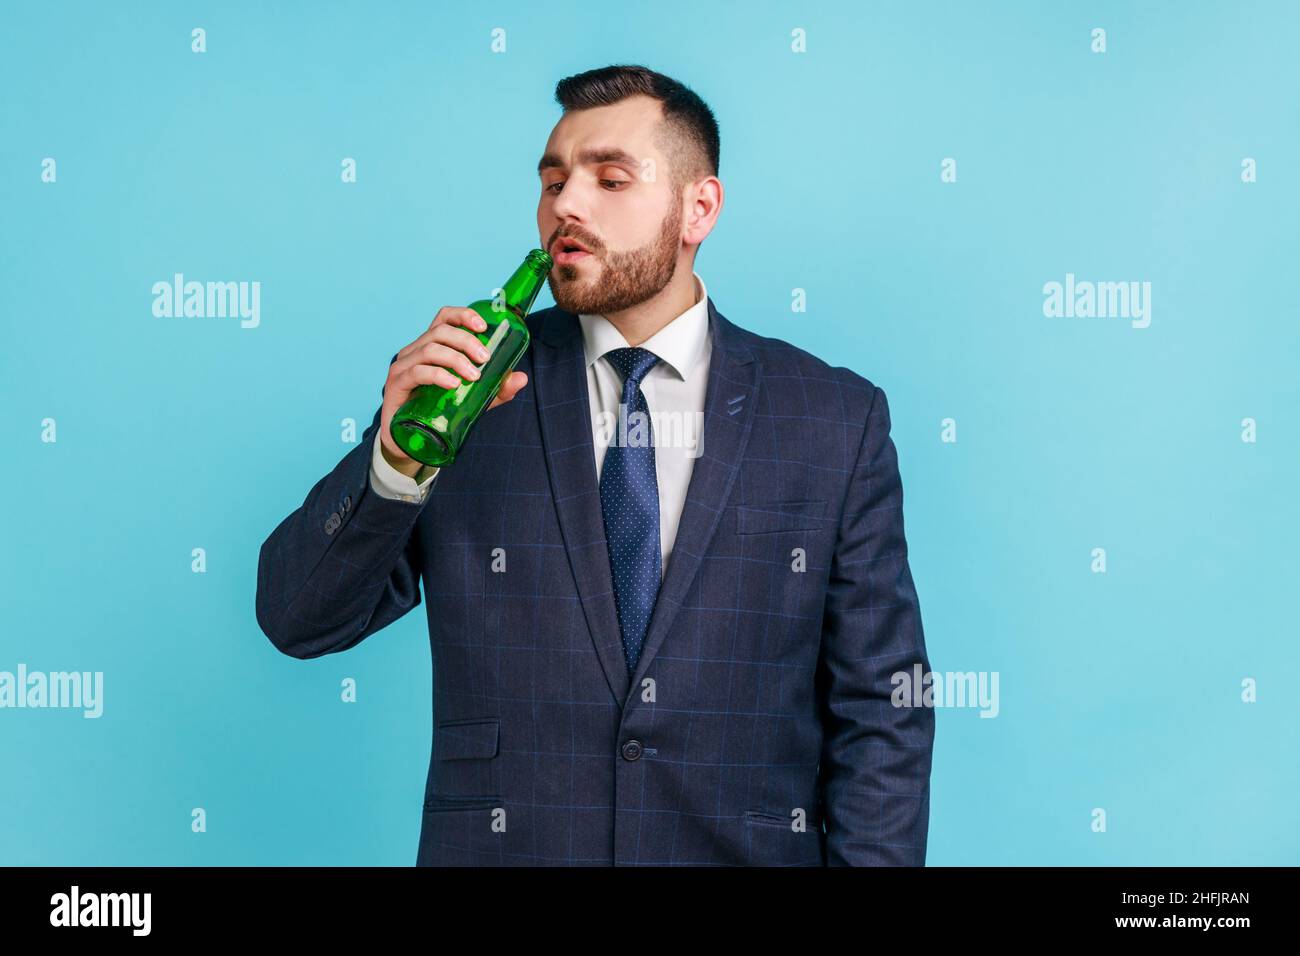 Bärtiger junger Erwachsener, Geschäftsmann im offiziellen Stil, der Alkohol trinkt, eine Bierflasche in der Hand hält und an Alkoholismus leidet. Innenaufnahme des Studios isoliert auf blauem Hintergrund. Stockfoto